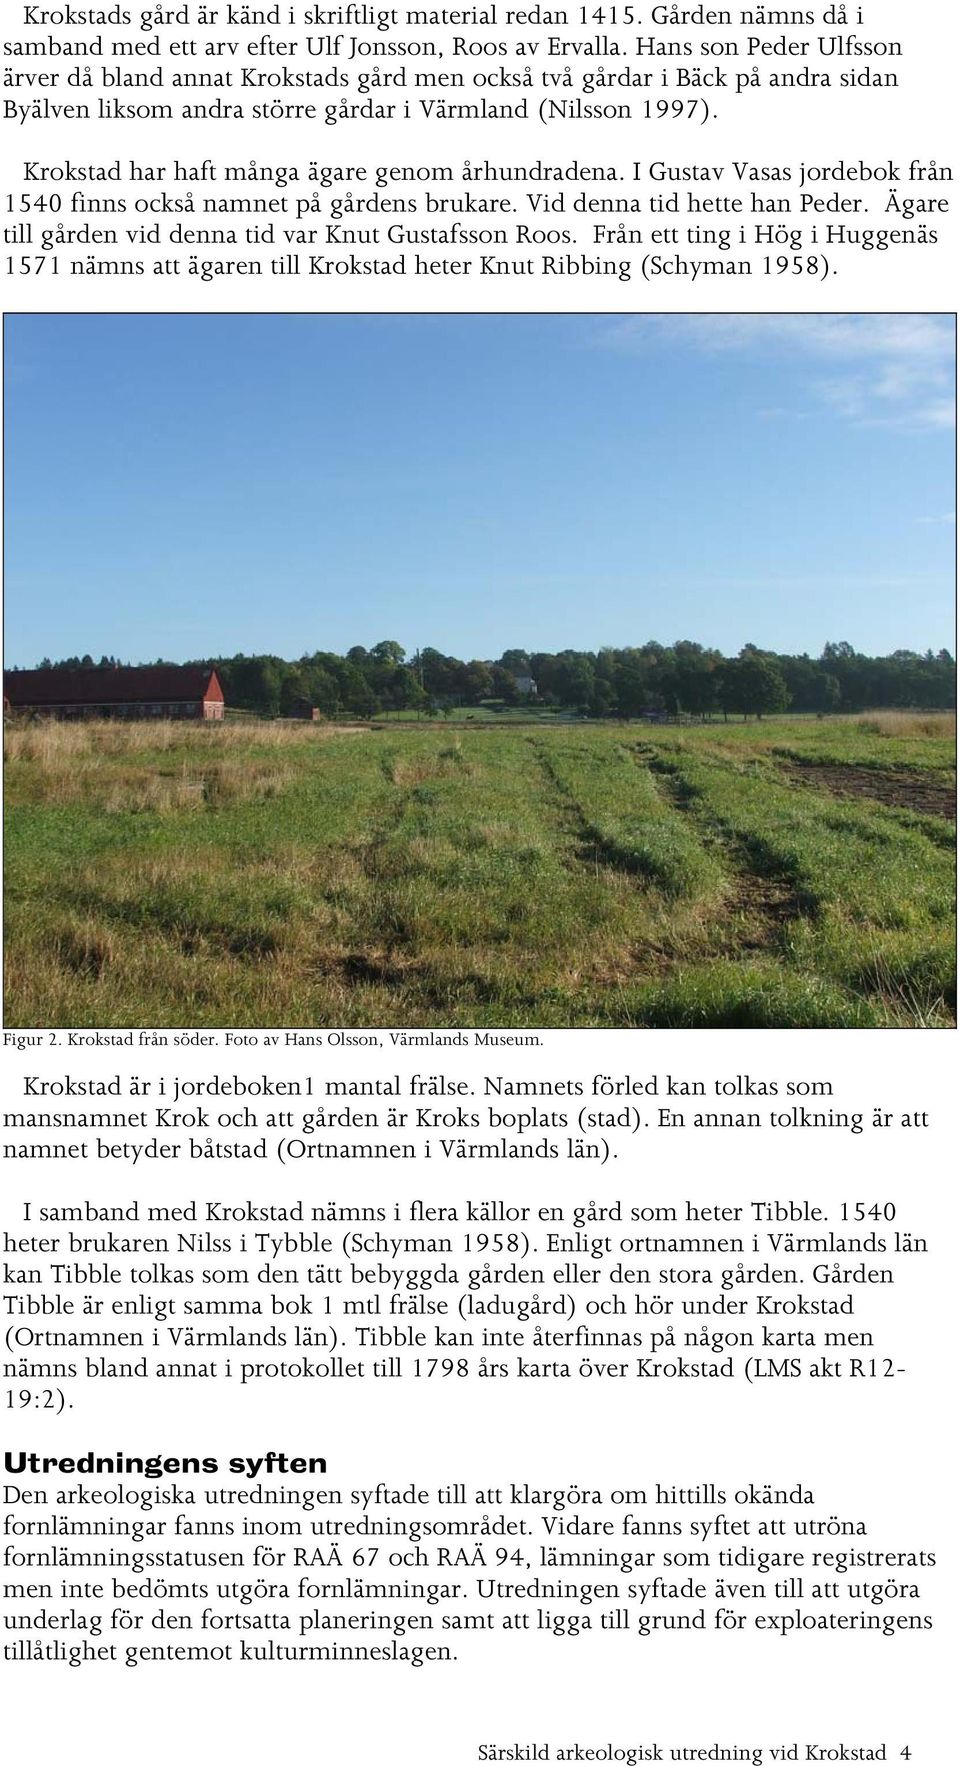 Krokstad har haft många ägare genom århundradena. I Gustav Vasas jordebok från 1540 finns också namnet på gårdens brukare. Vid denna tid hette han Peder.